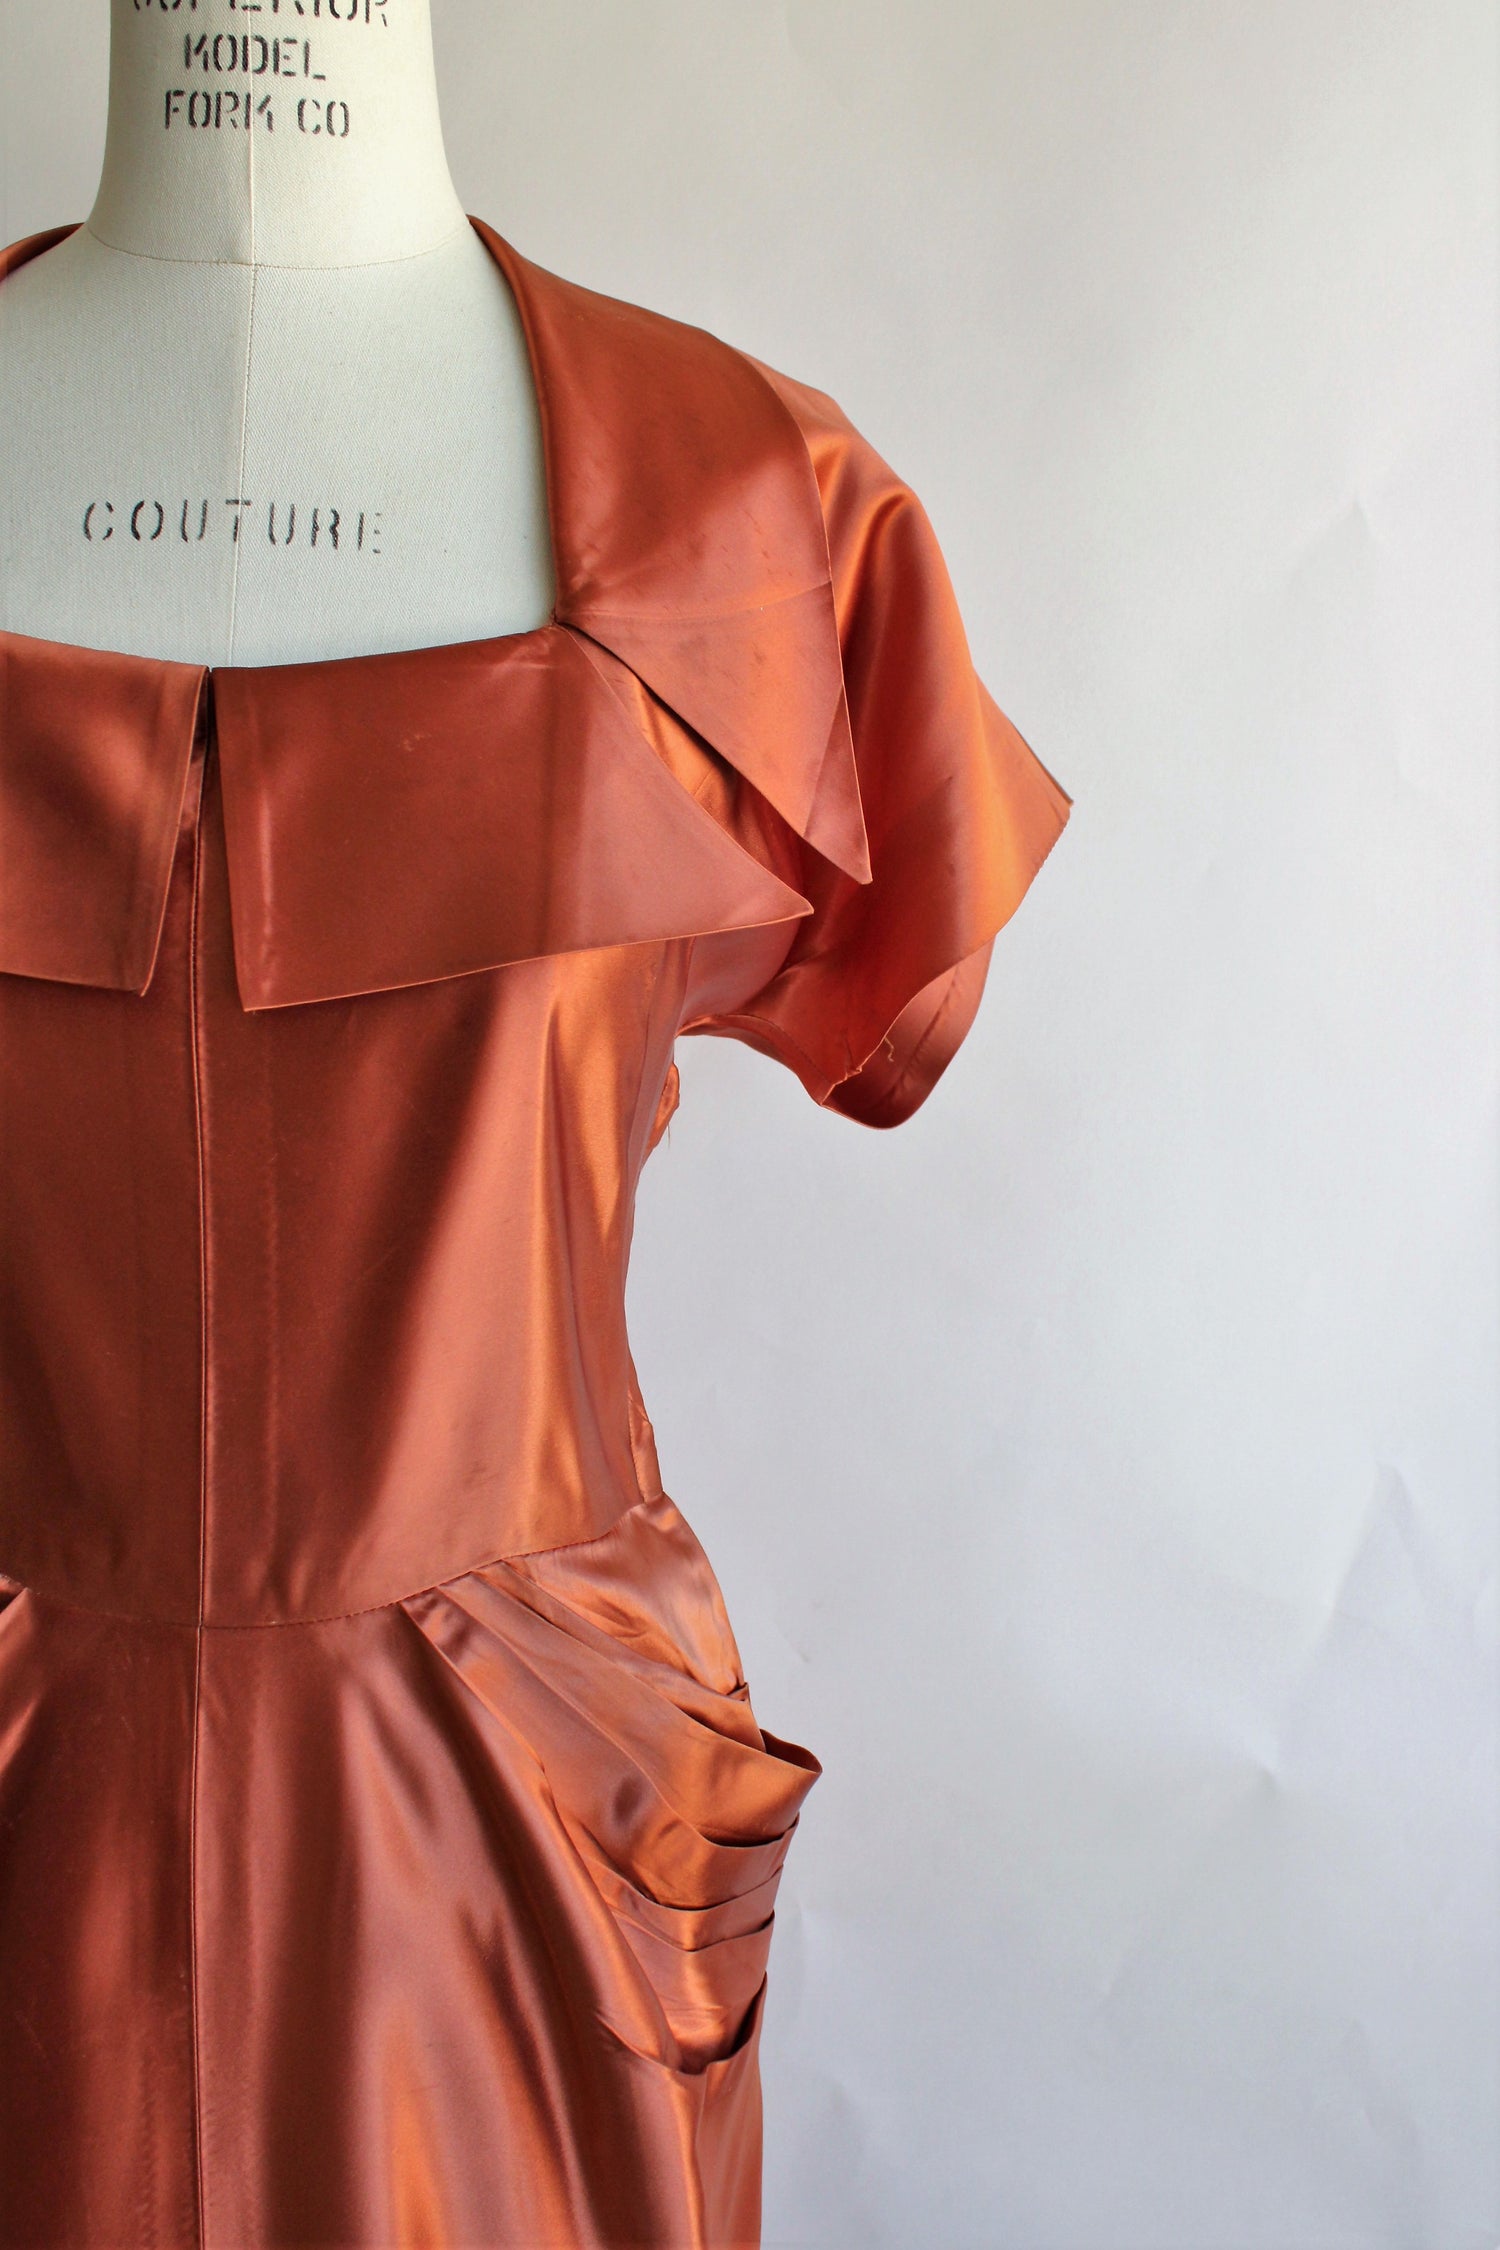 Vintage 1940s Rust Orange Satin Dress